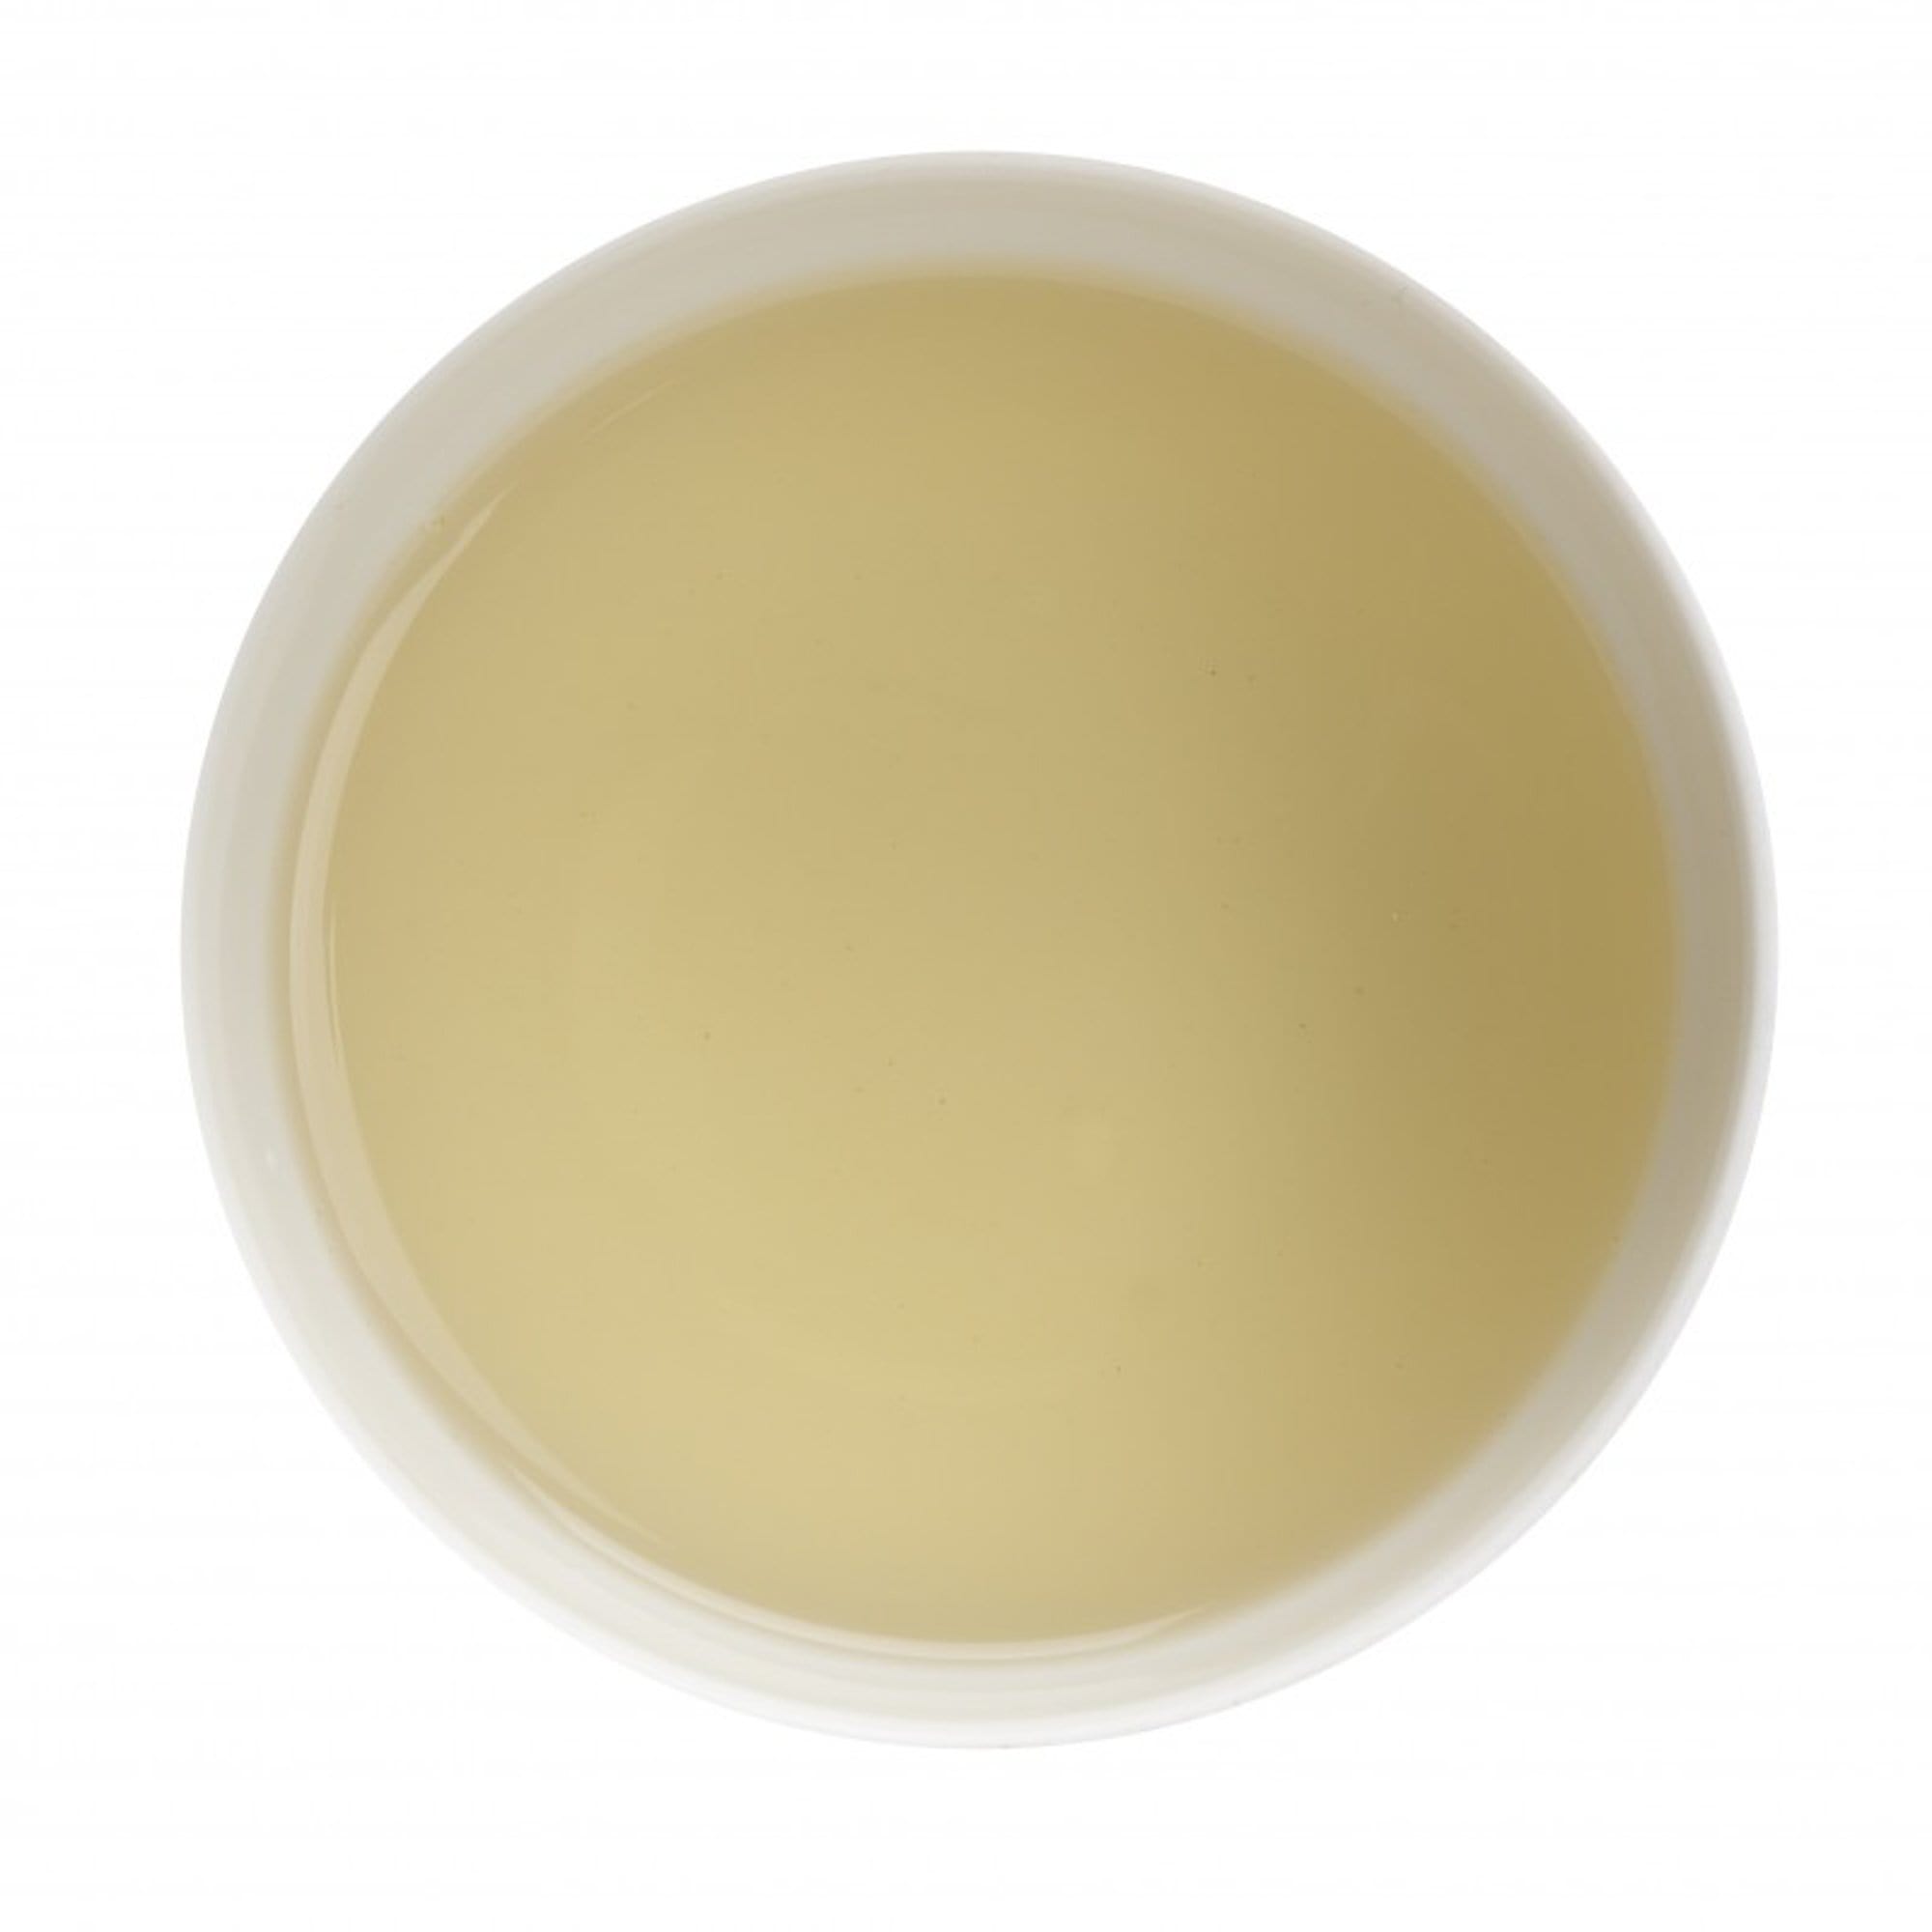 Dammann Tēja maisiņos HoReCa, The Blanc Passion de Fleurs, baltā tēja, 24gb